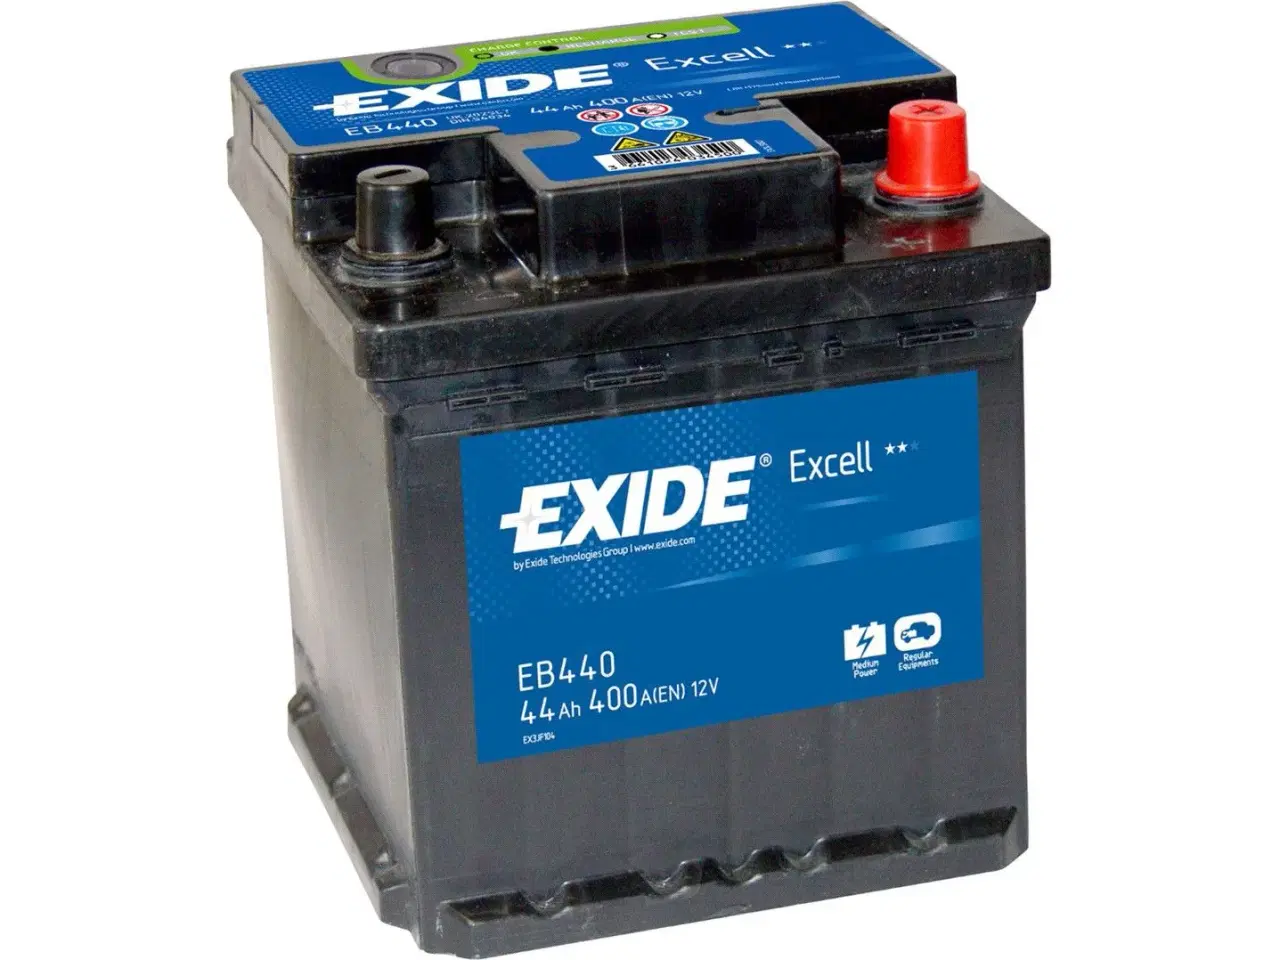 Billede 1 - Bil Batteri - EB440 - EXCELL